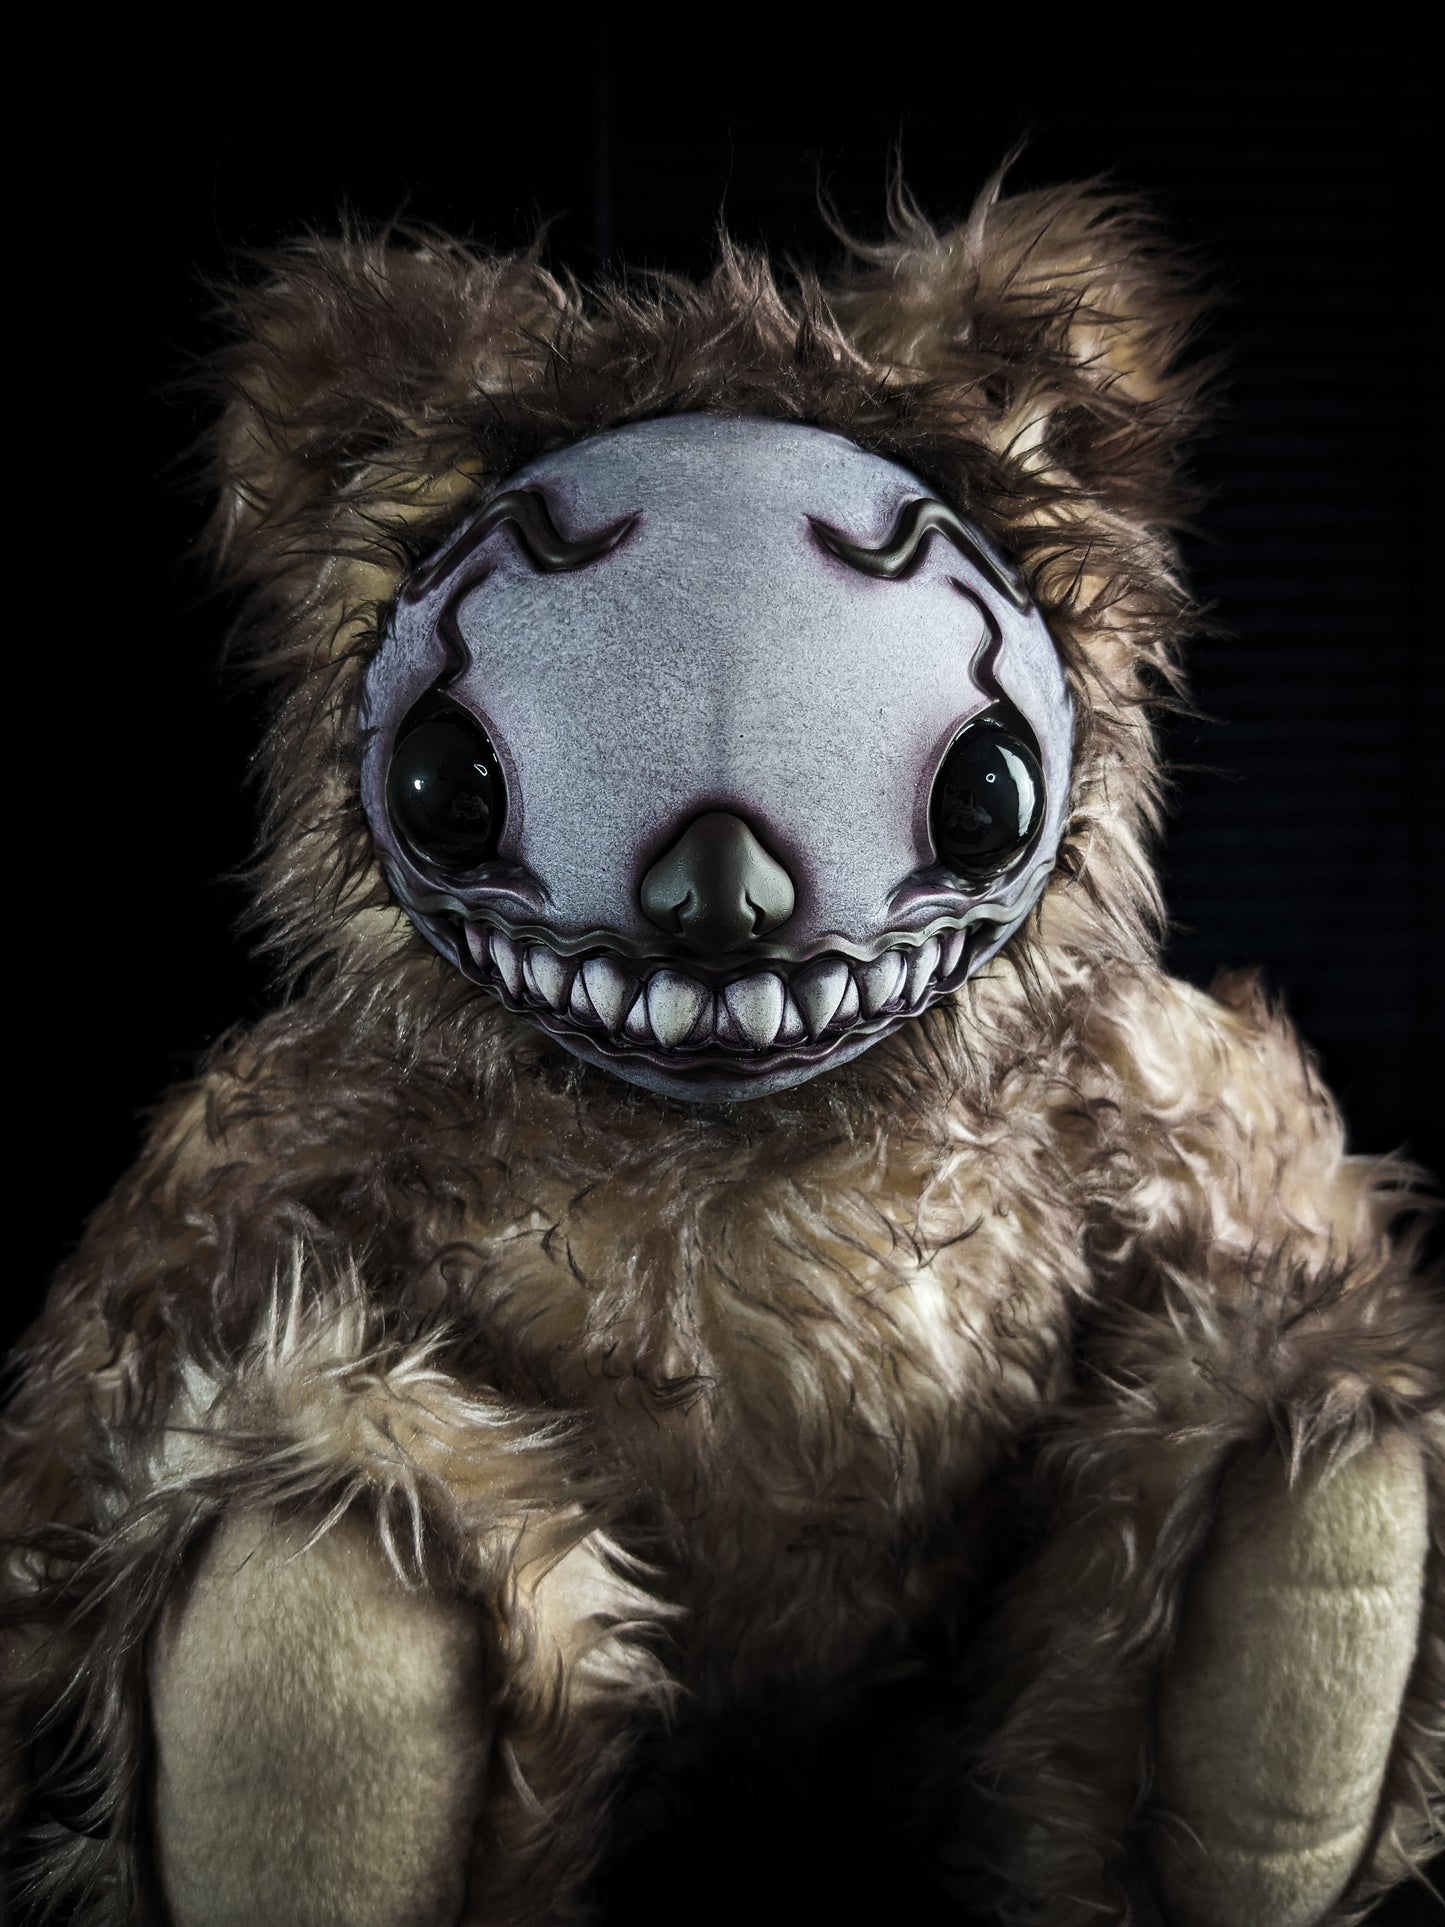 Rottlez (Krying Klown Ver.) - Monster Art Doll Plush Toy